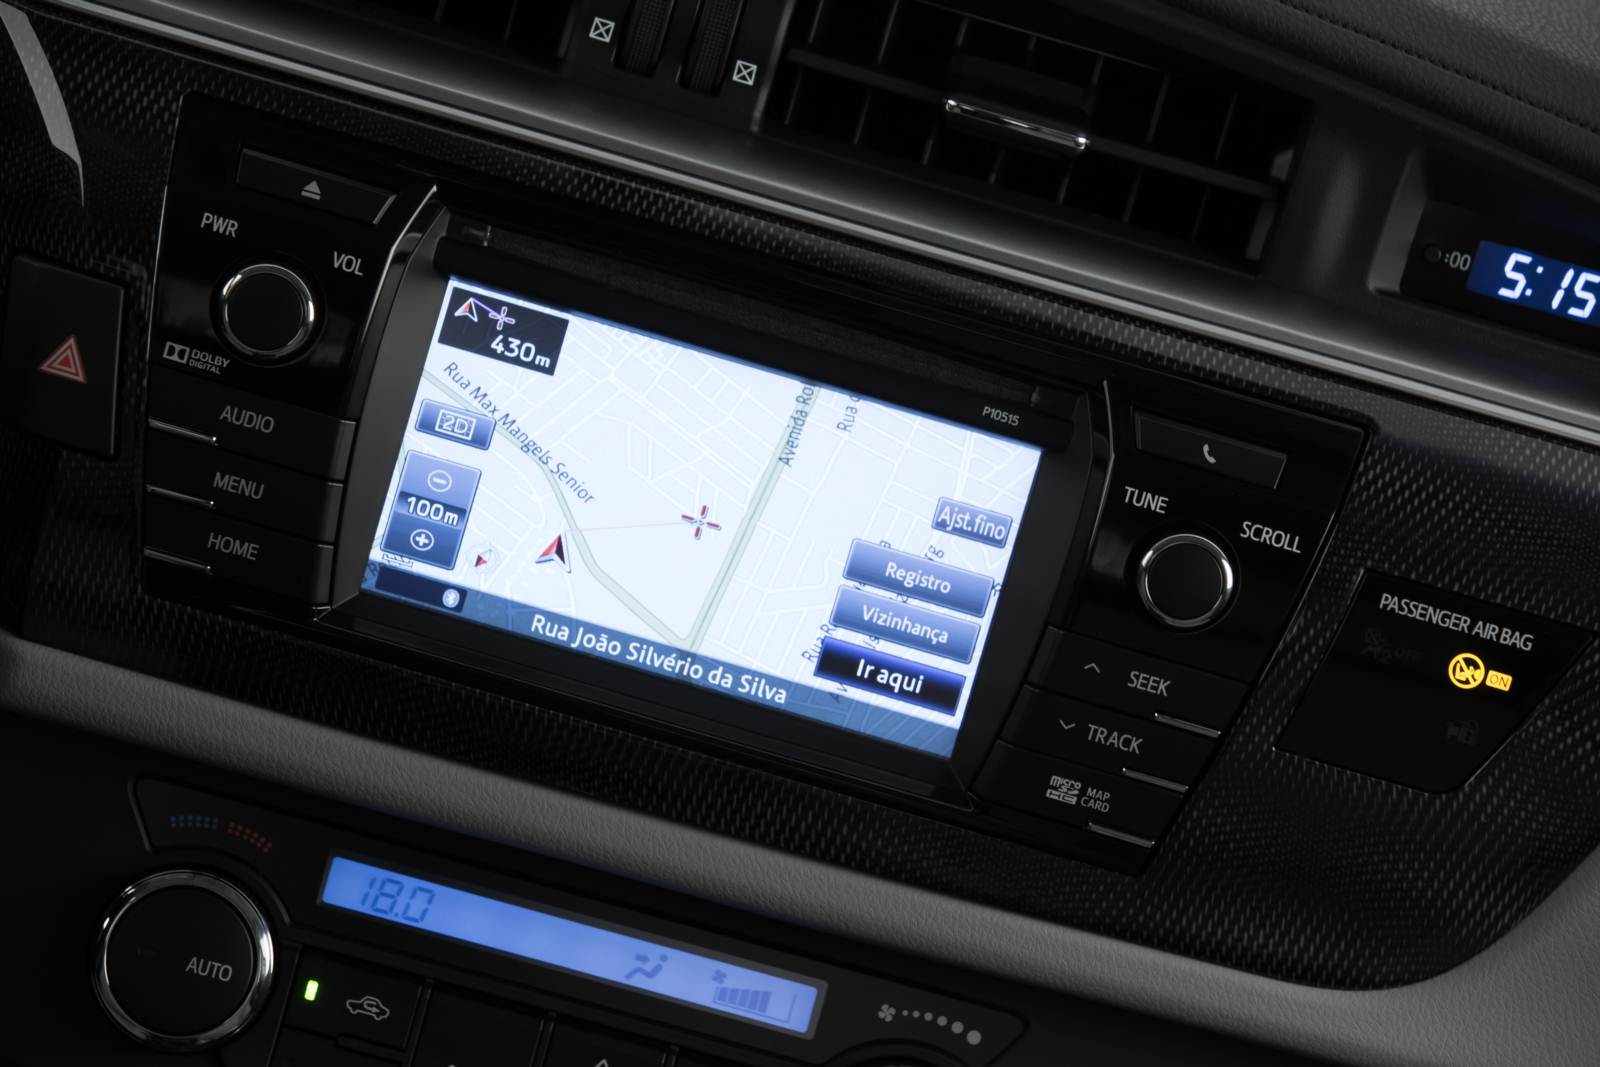 Toyota Corolla XEi 2015 Automático - sistema multimídia